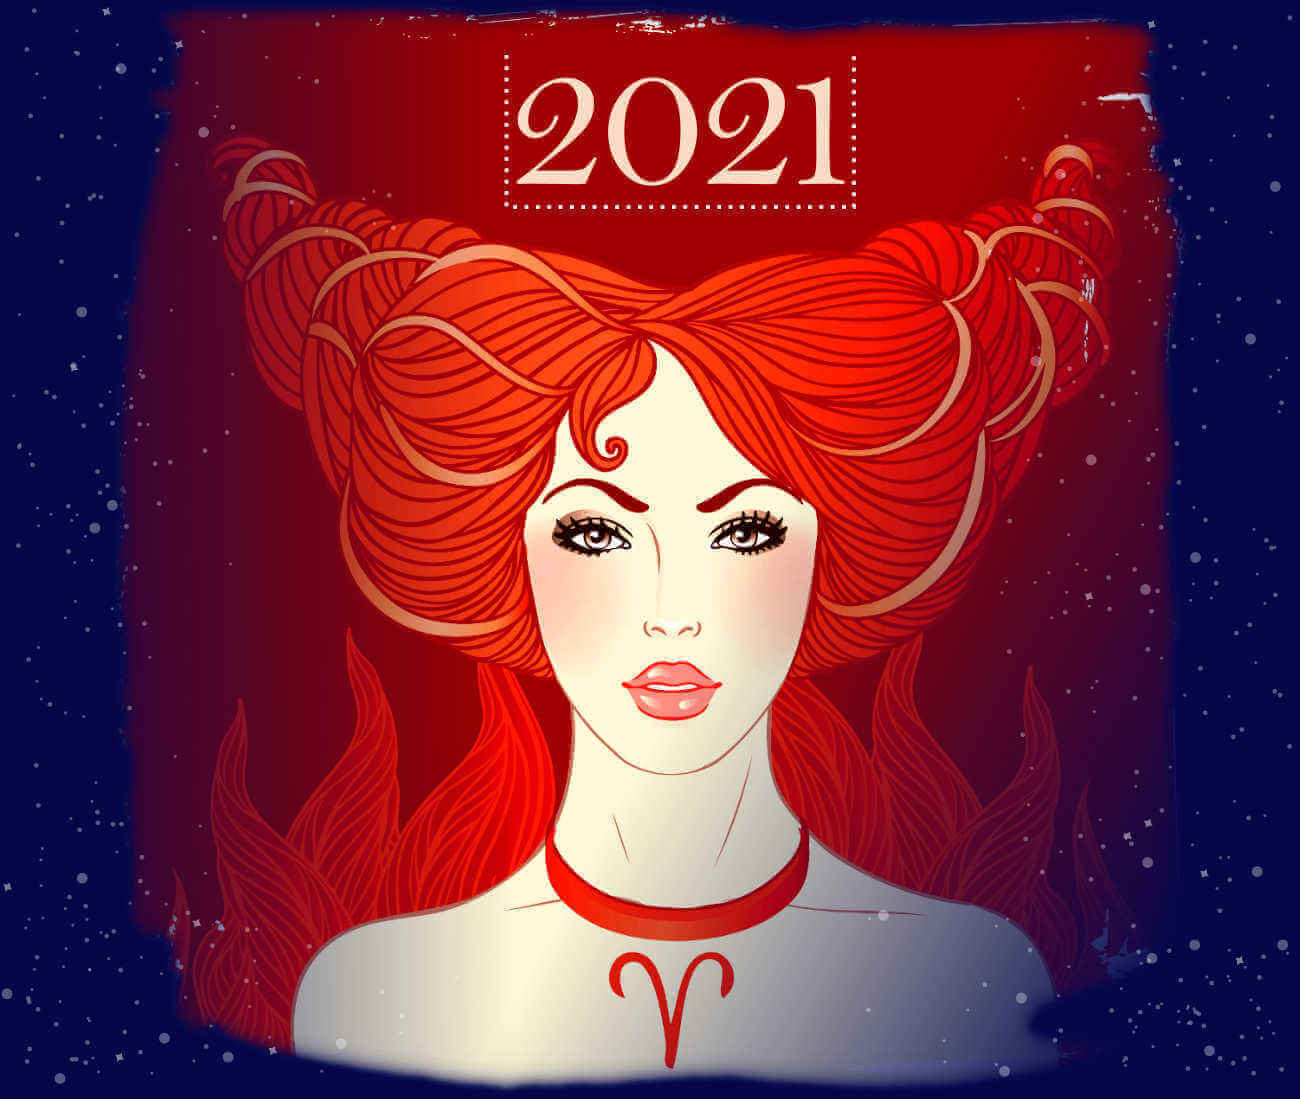 Horoscope Aries 2021